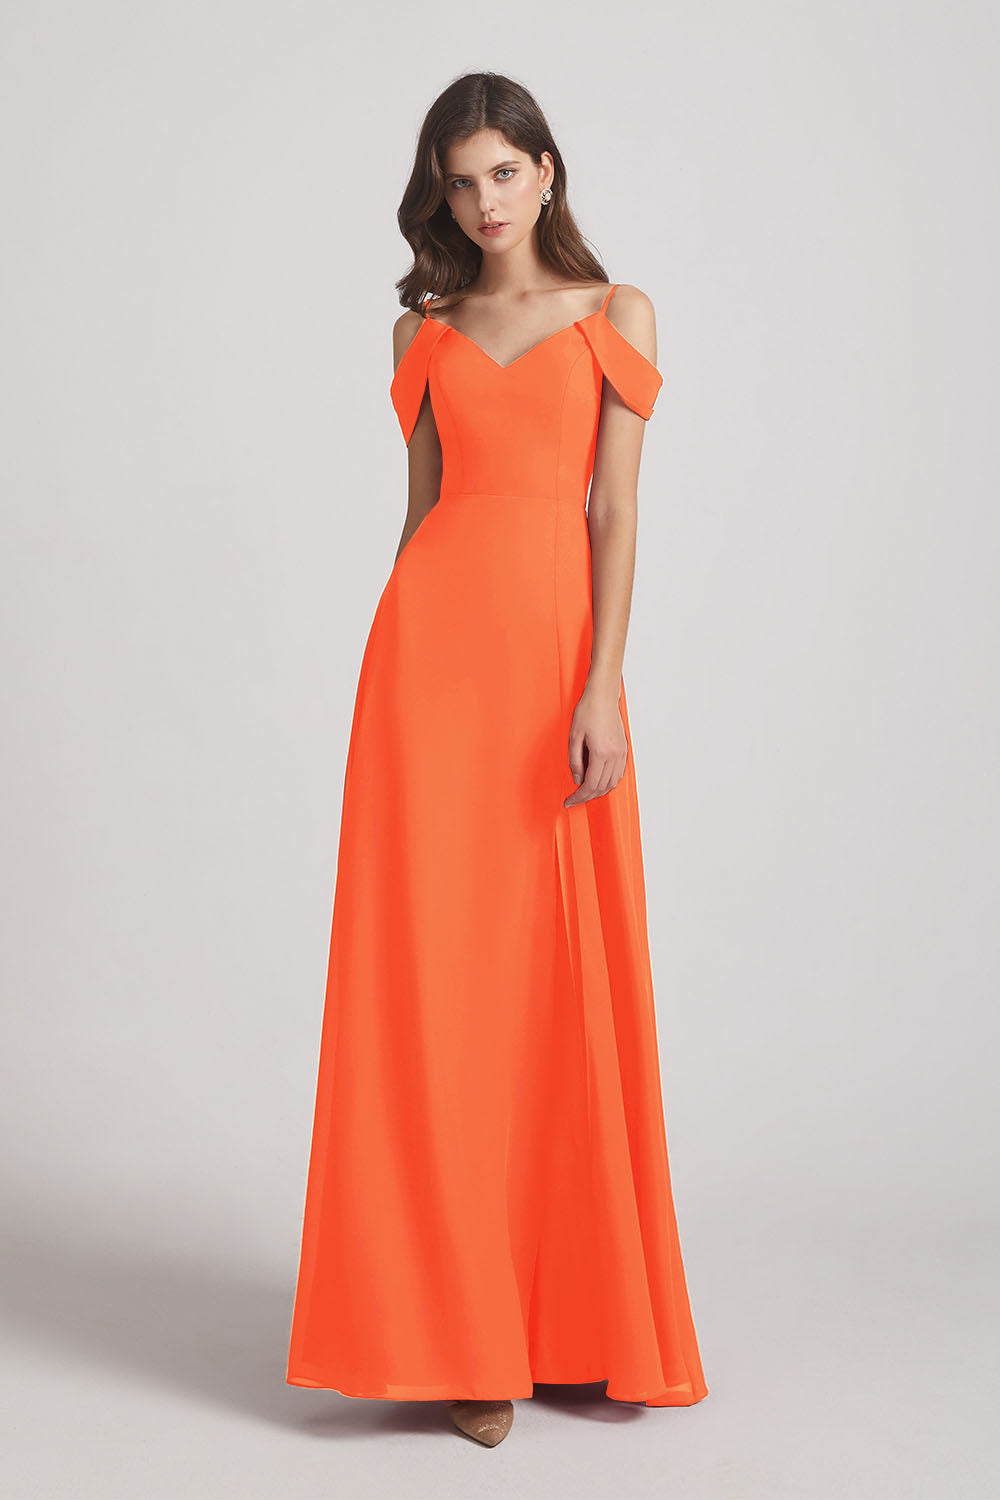 Alfa Bridal Tangerine Tango Chiffon Cold Shoulder V-Neck Bridesmaid Dresses with Slit (AF0093)